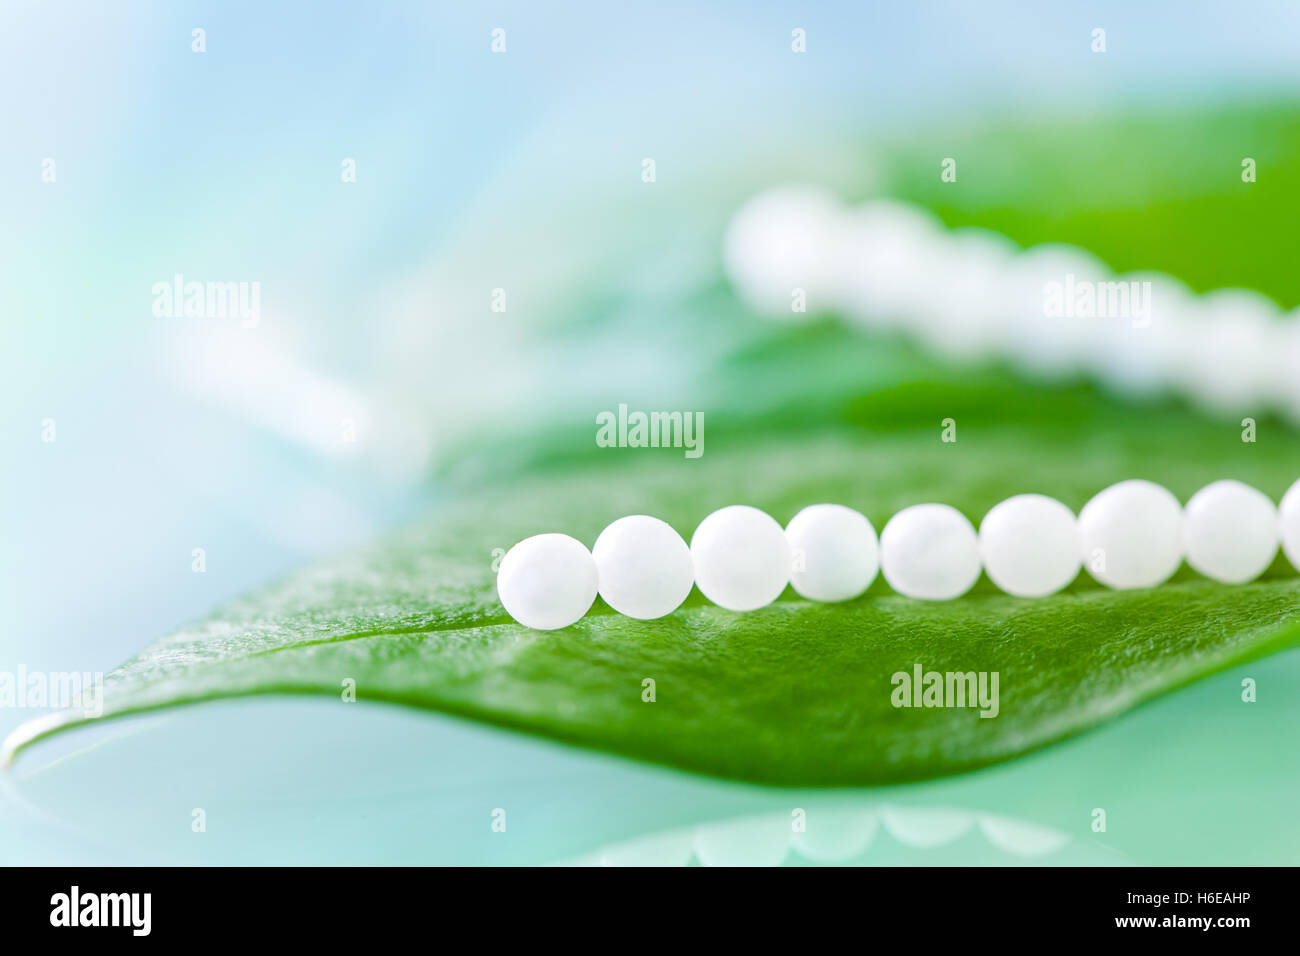 Extreme close up de plusieurs pilules homéopathiques sur feuilles vertes contre fond bleu. Banque D'Images